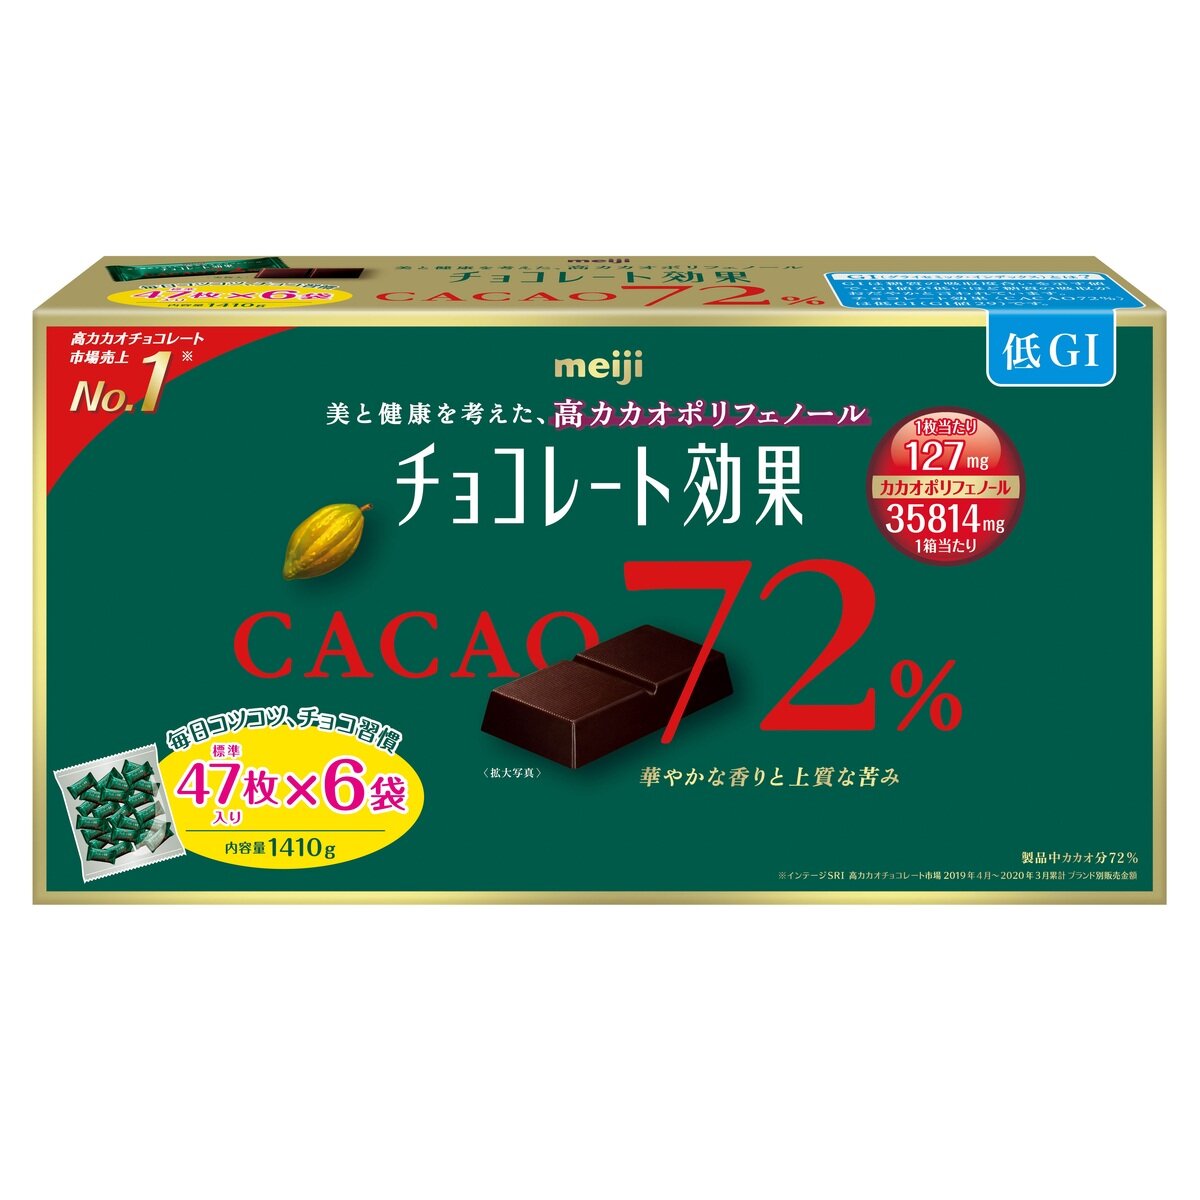 明治 チョコレート効果 カカオ 72% 47枚 X 6袋 1,410g Costco Japan